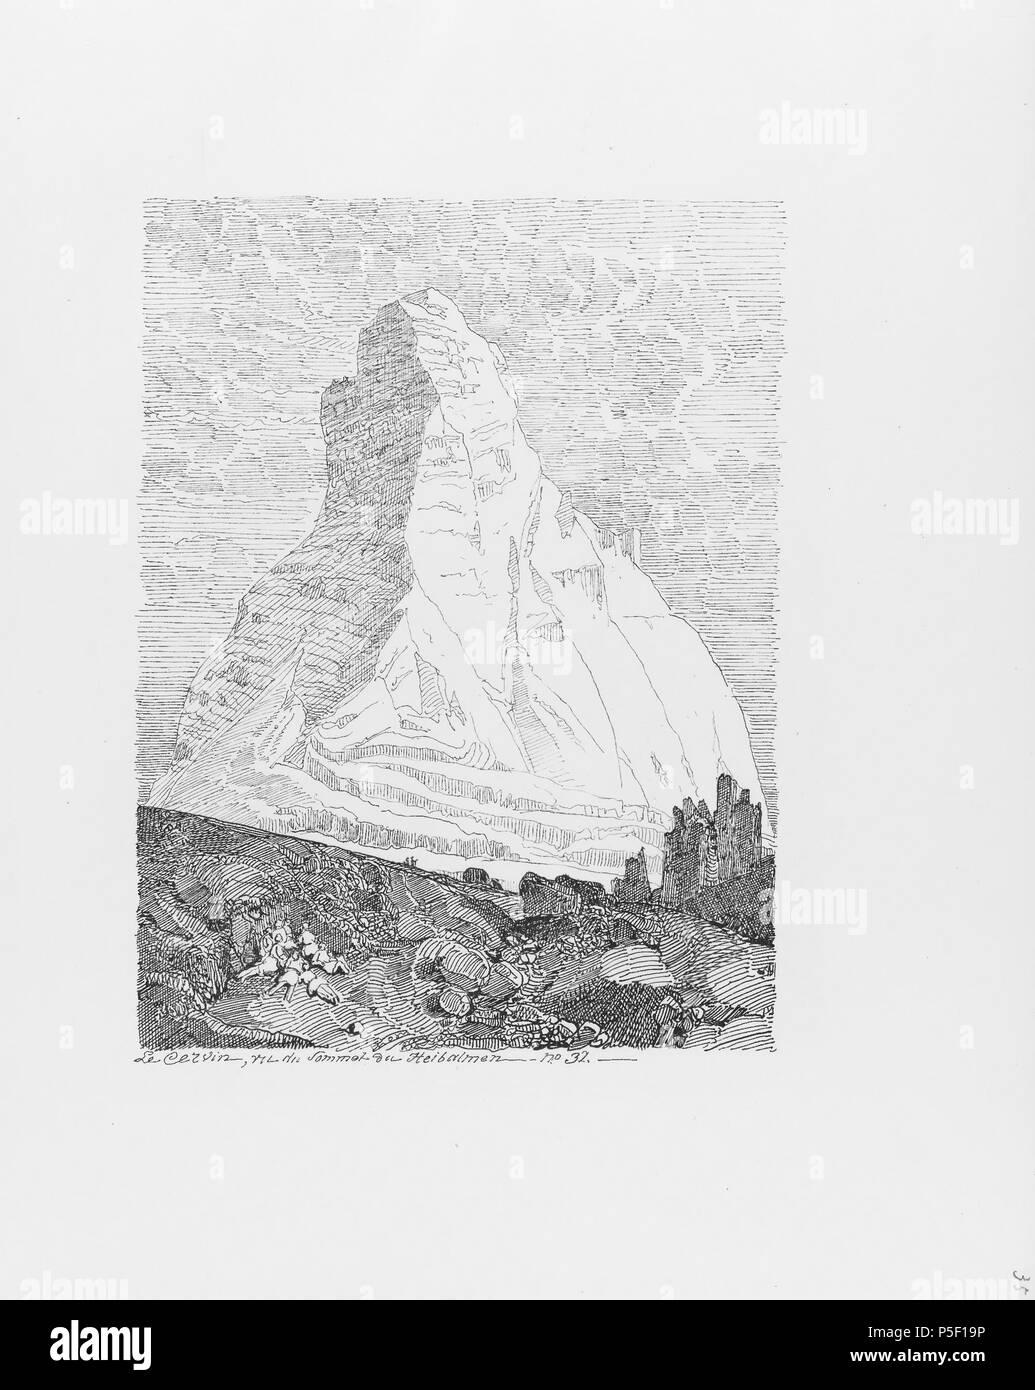 322 CH-NB-Voyage autour du Mont-Blanc dans les vallées d'Hérens de Zermatt et au Grimsel 1843-nbdig-19161-034 Stock Photo